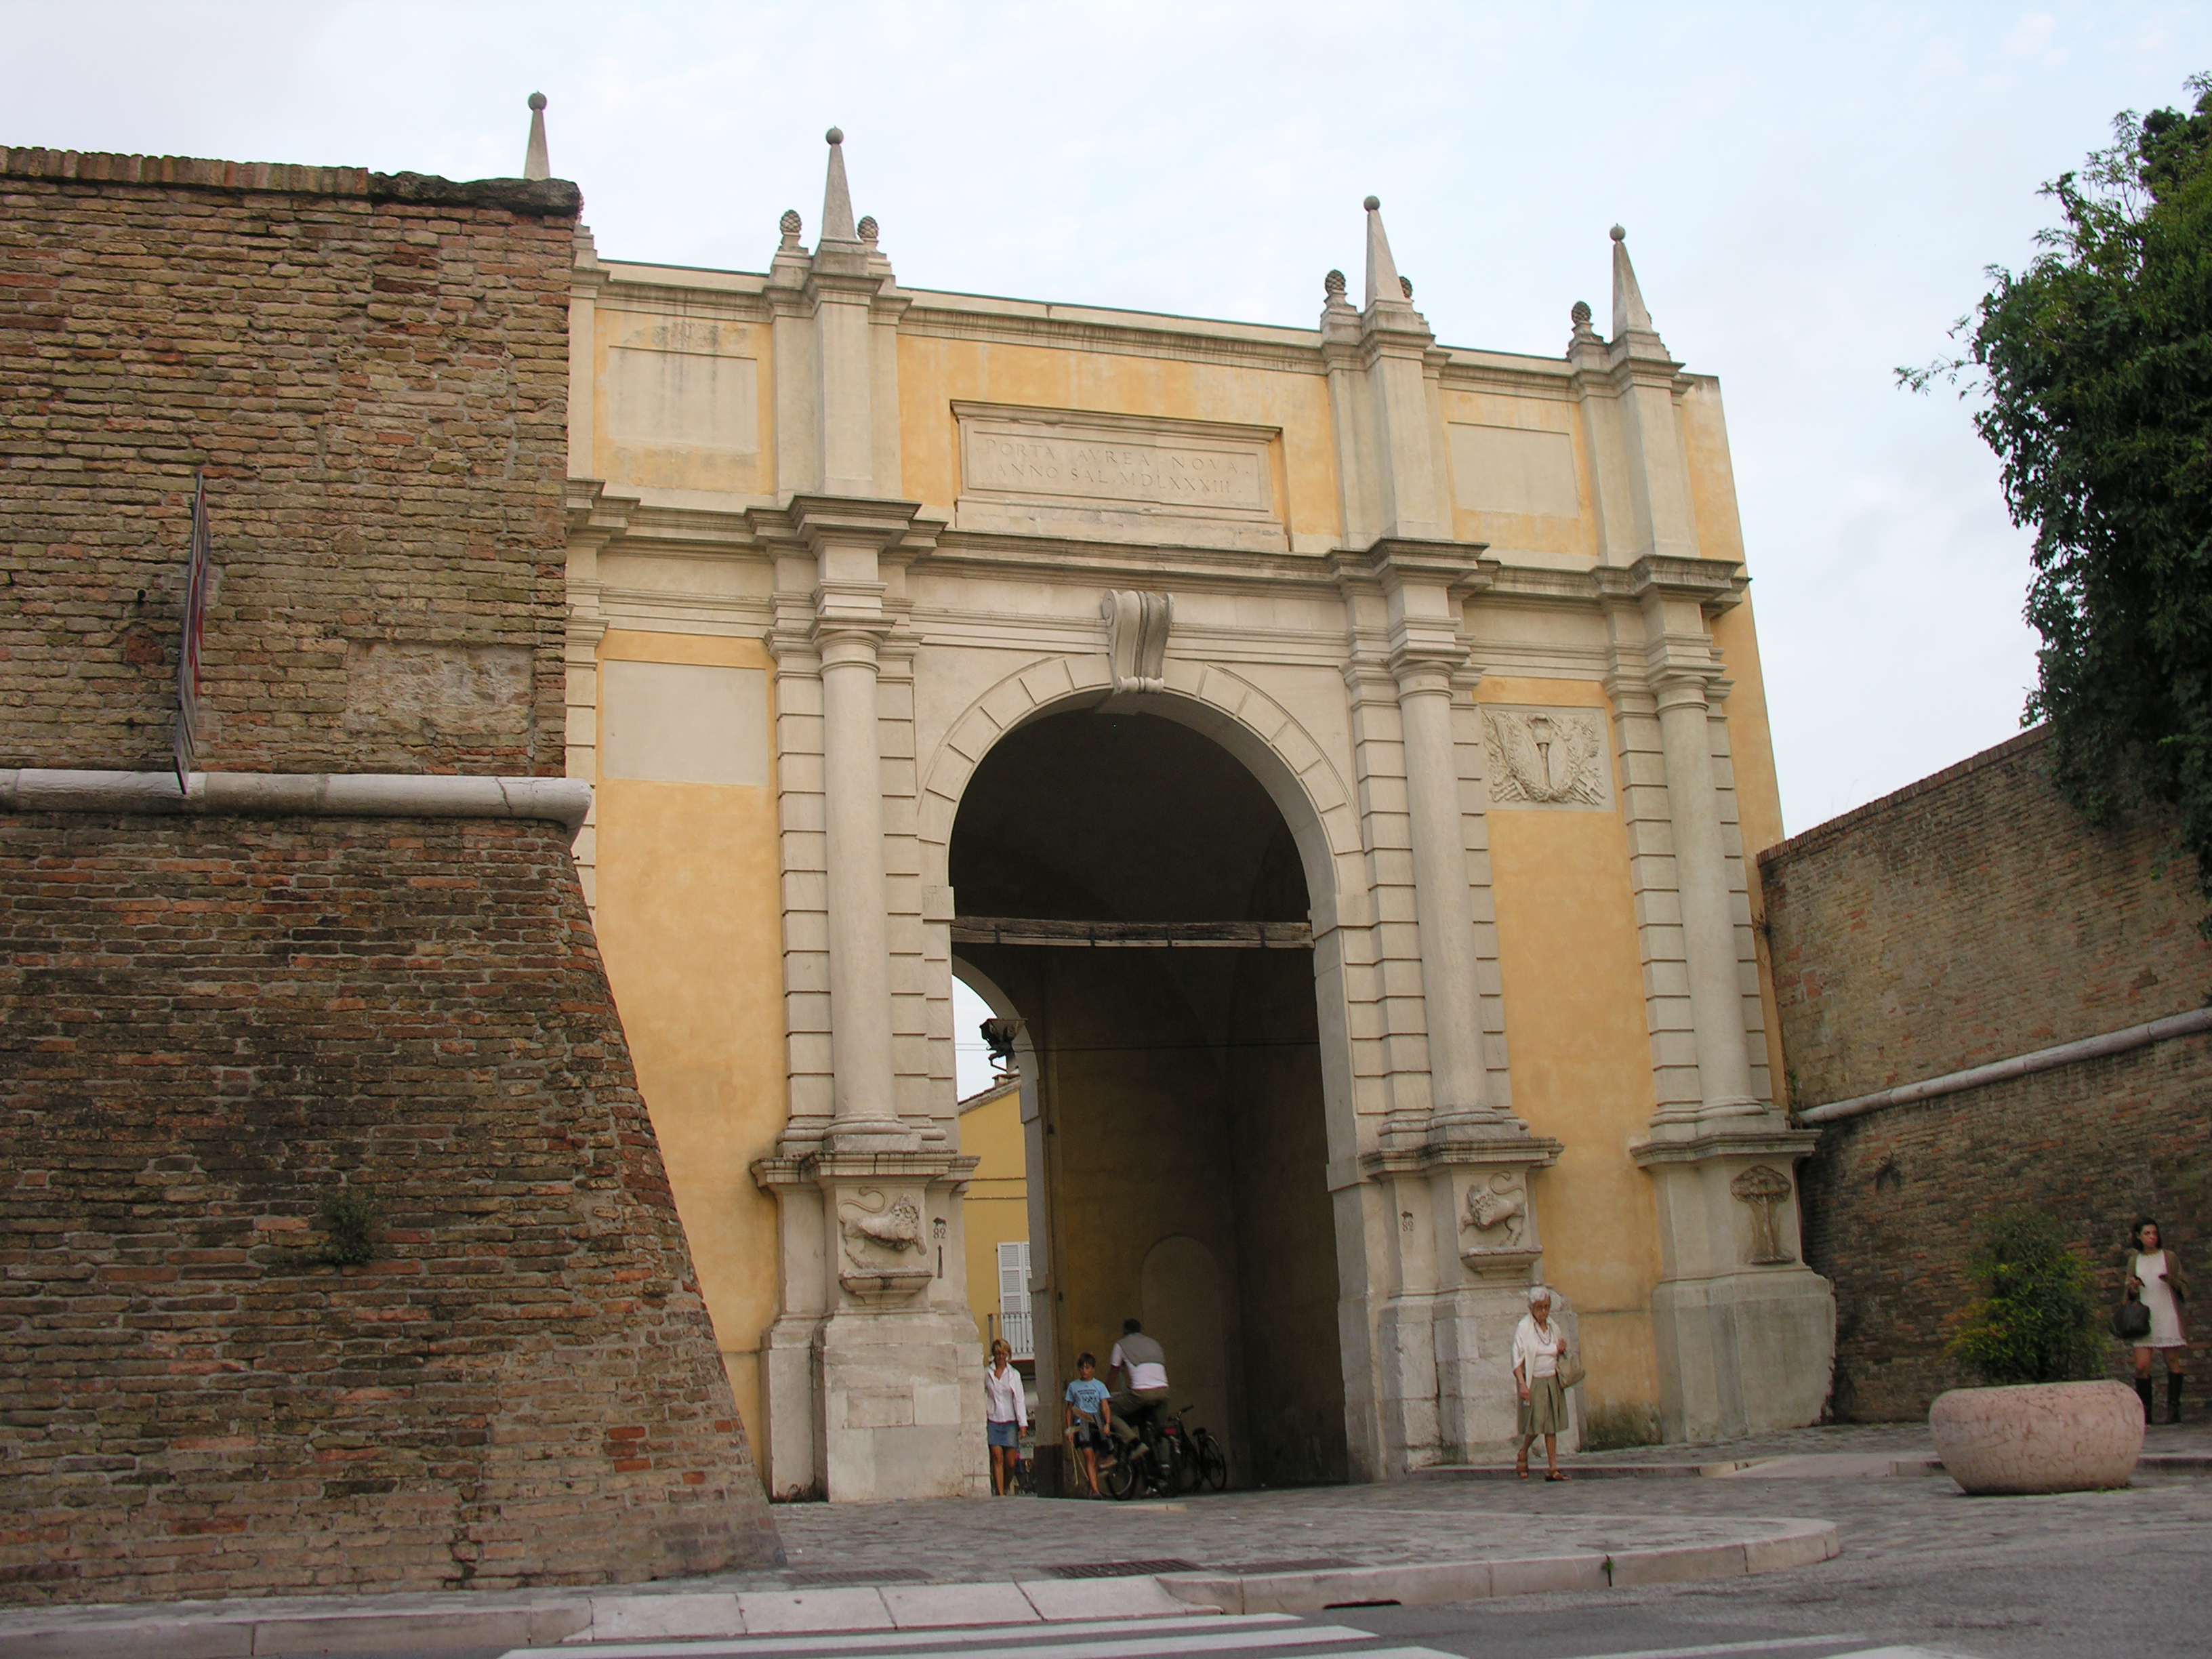 foto: https://upload.wikimedia.org/wikipedia/commons/b/bc/Porta_adriana_la_facciata_con_le_vecchie_mura_del_centro.JPG